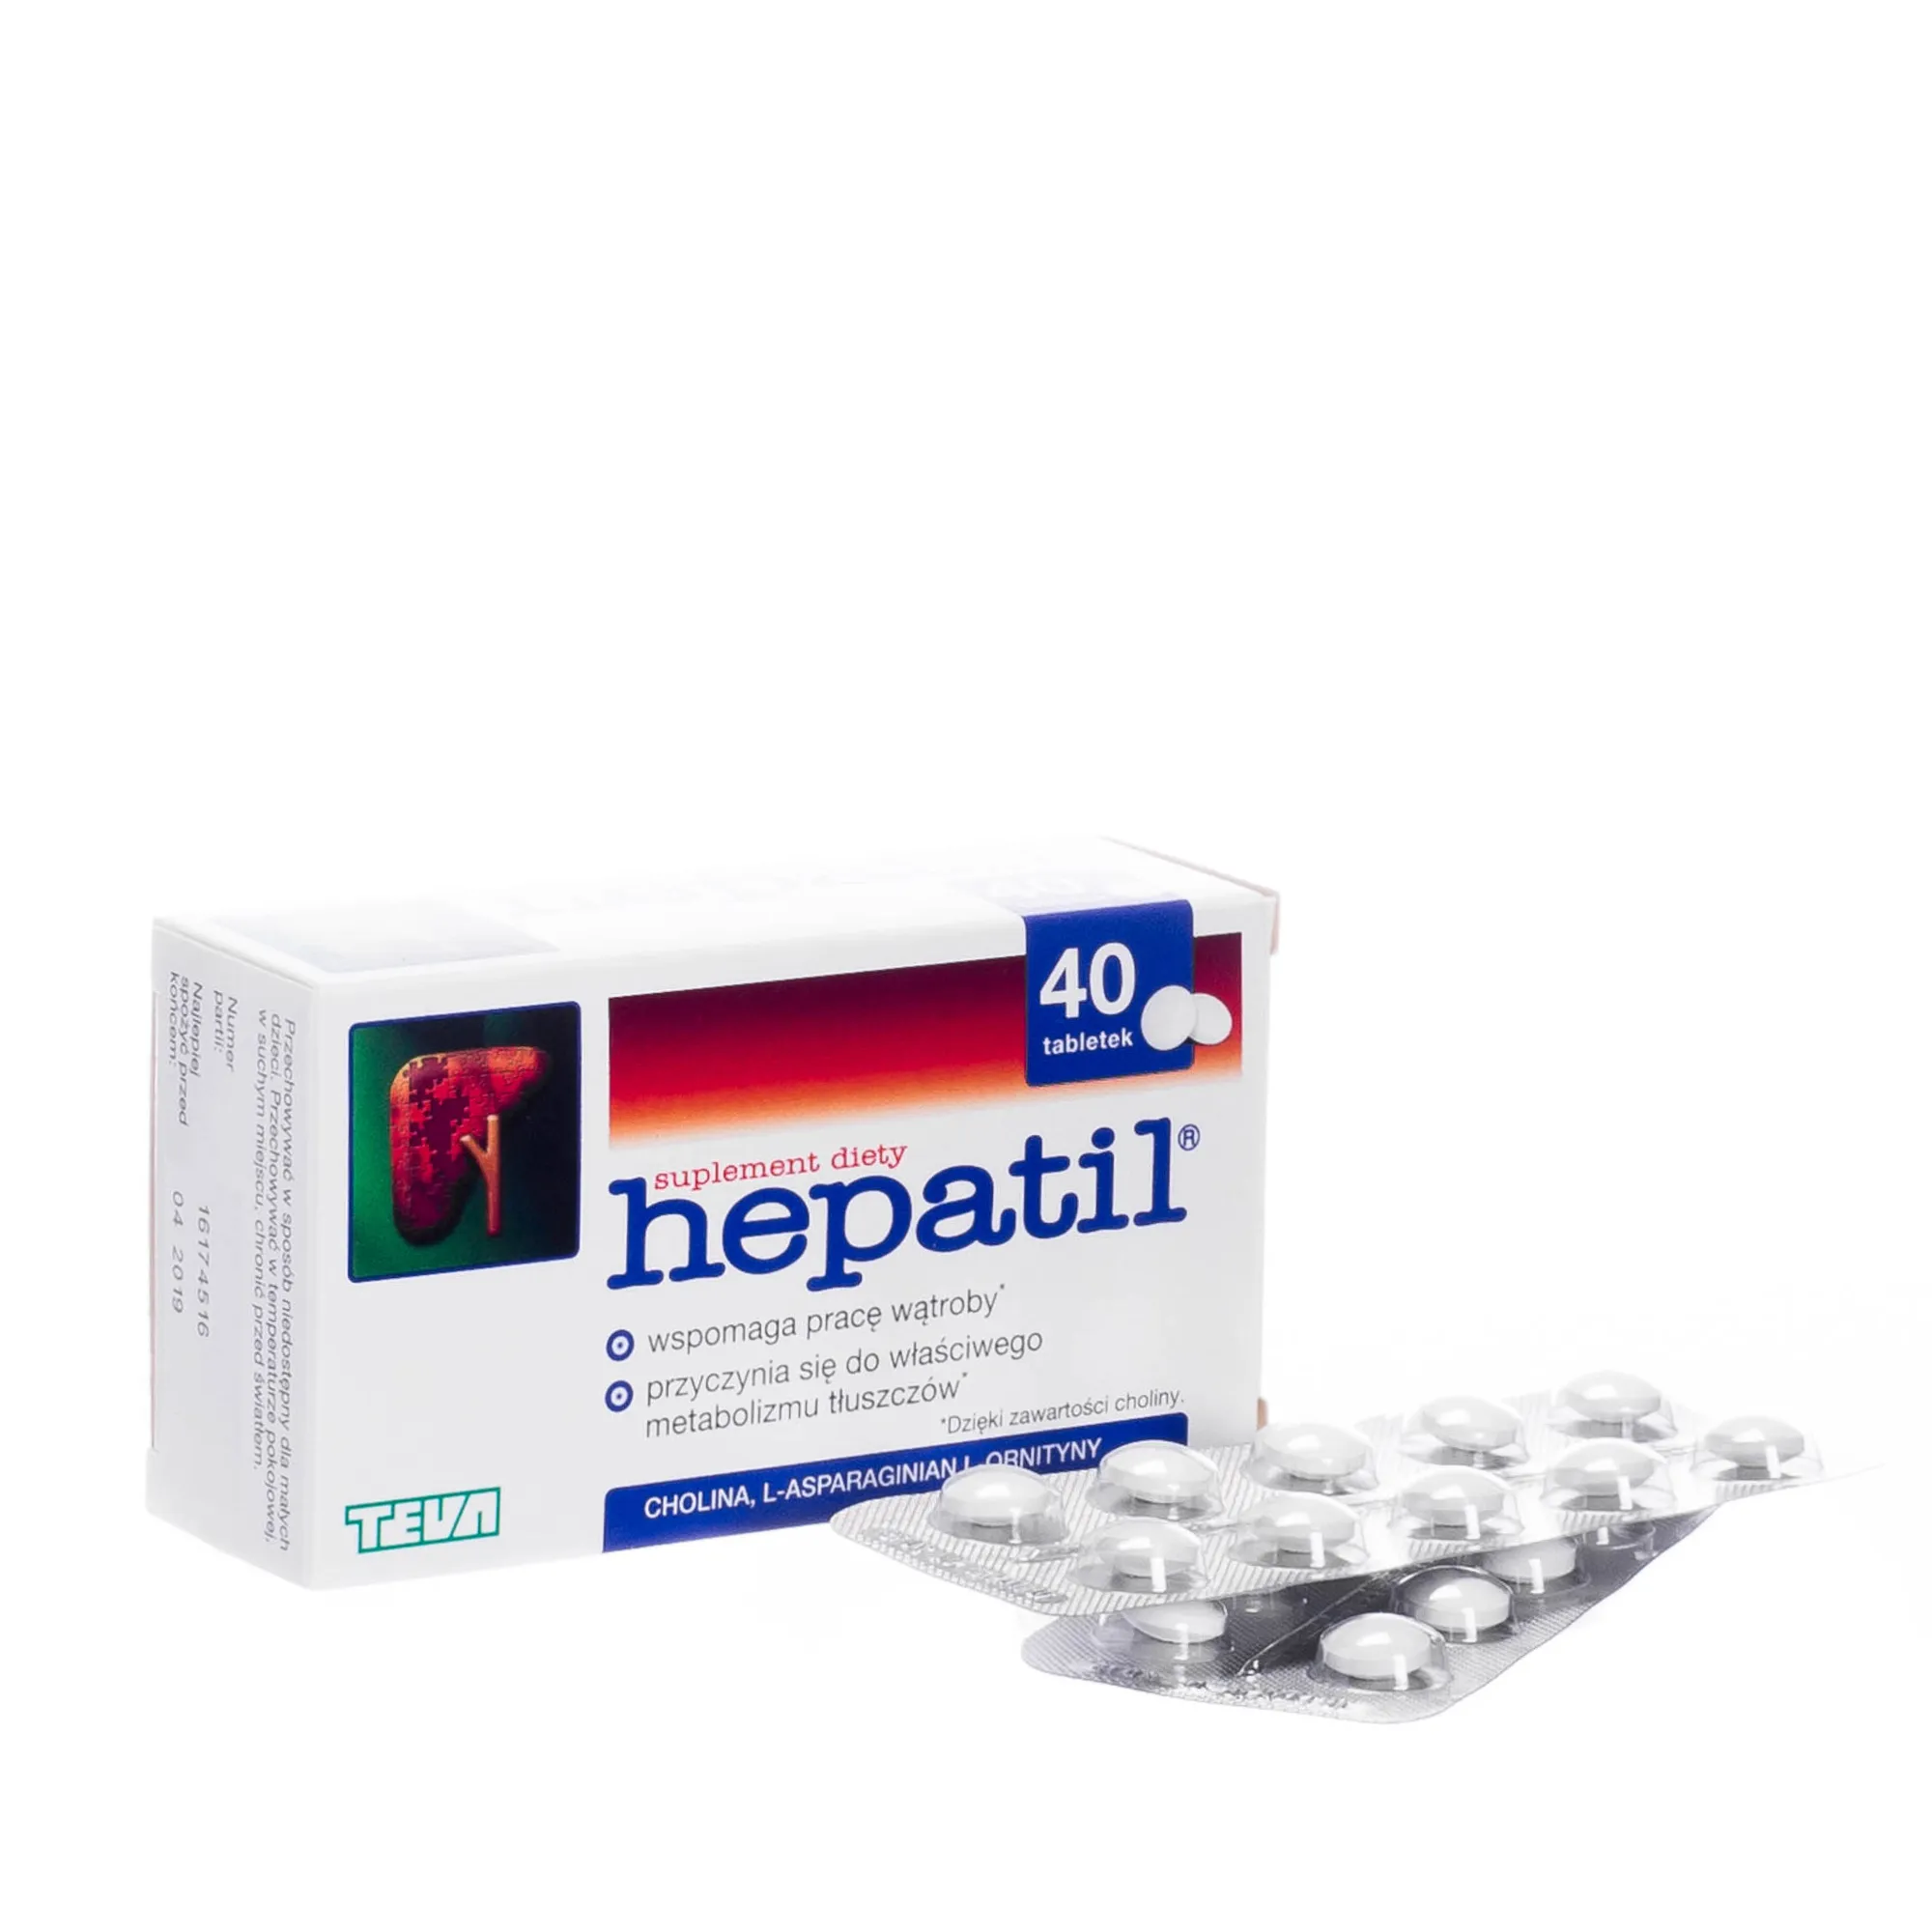 Hepatil - suplement diety wspomagający pracę wątroby, 40 tabletek. 